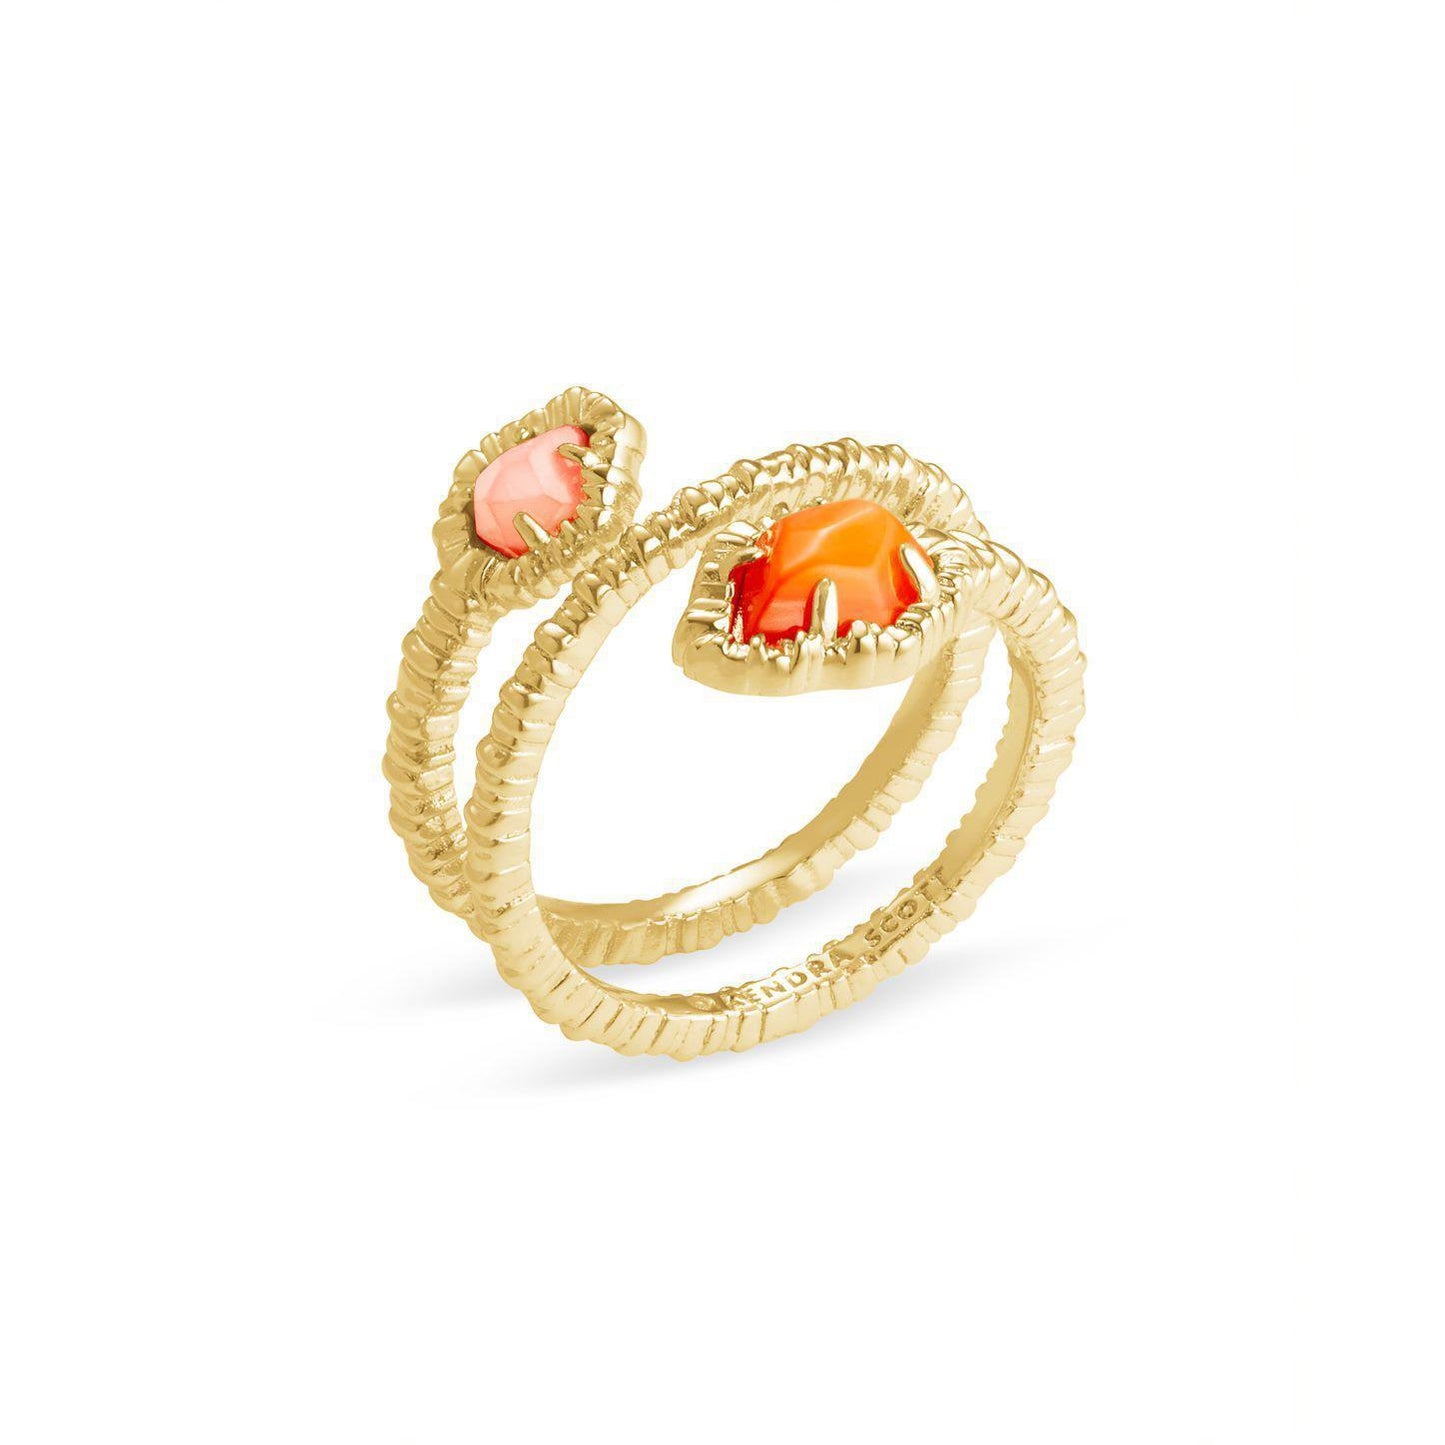 Spring 3 - Tessa Wrap Ring in Gold Papaya MOP